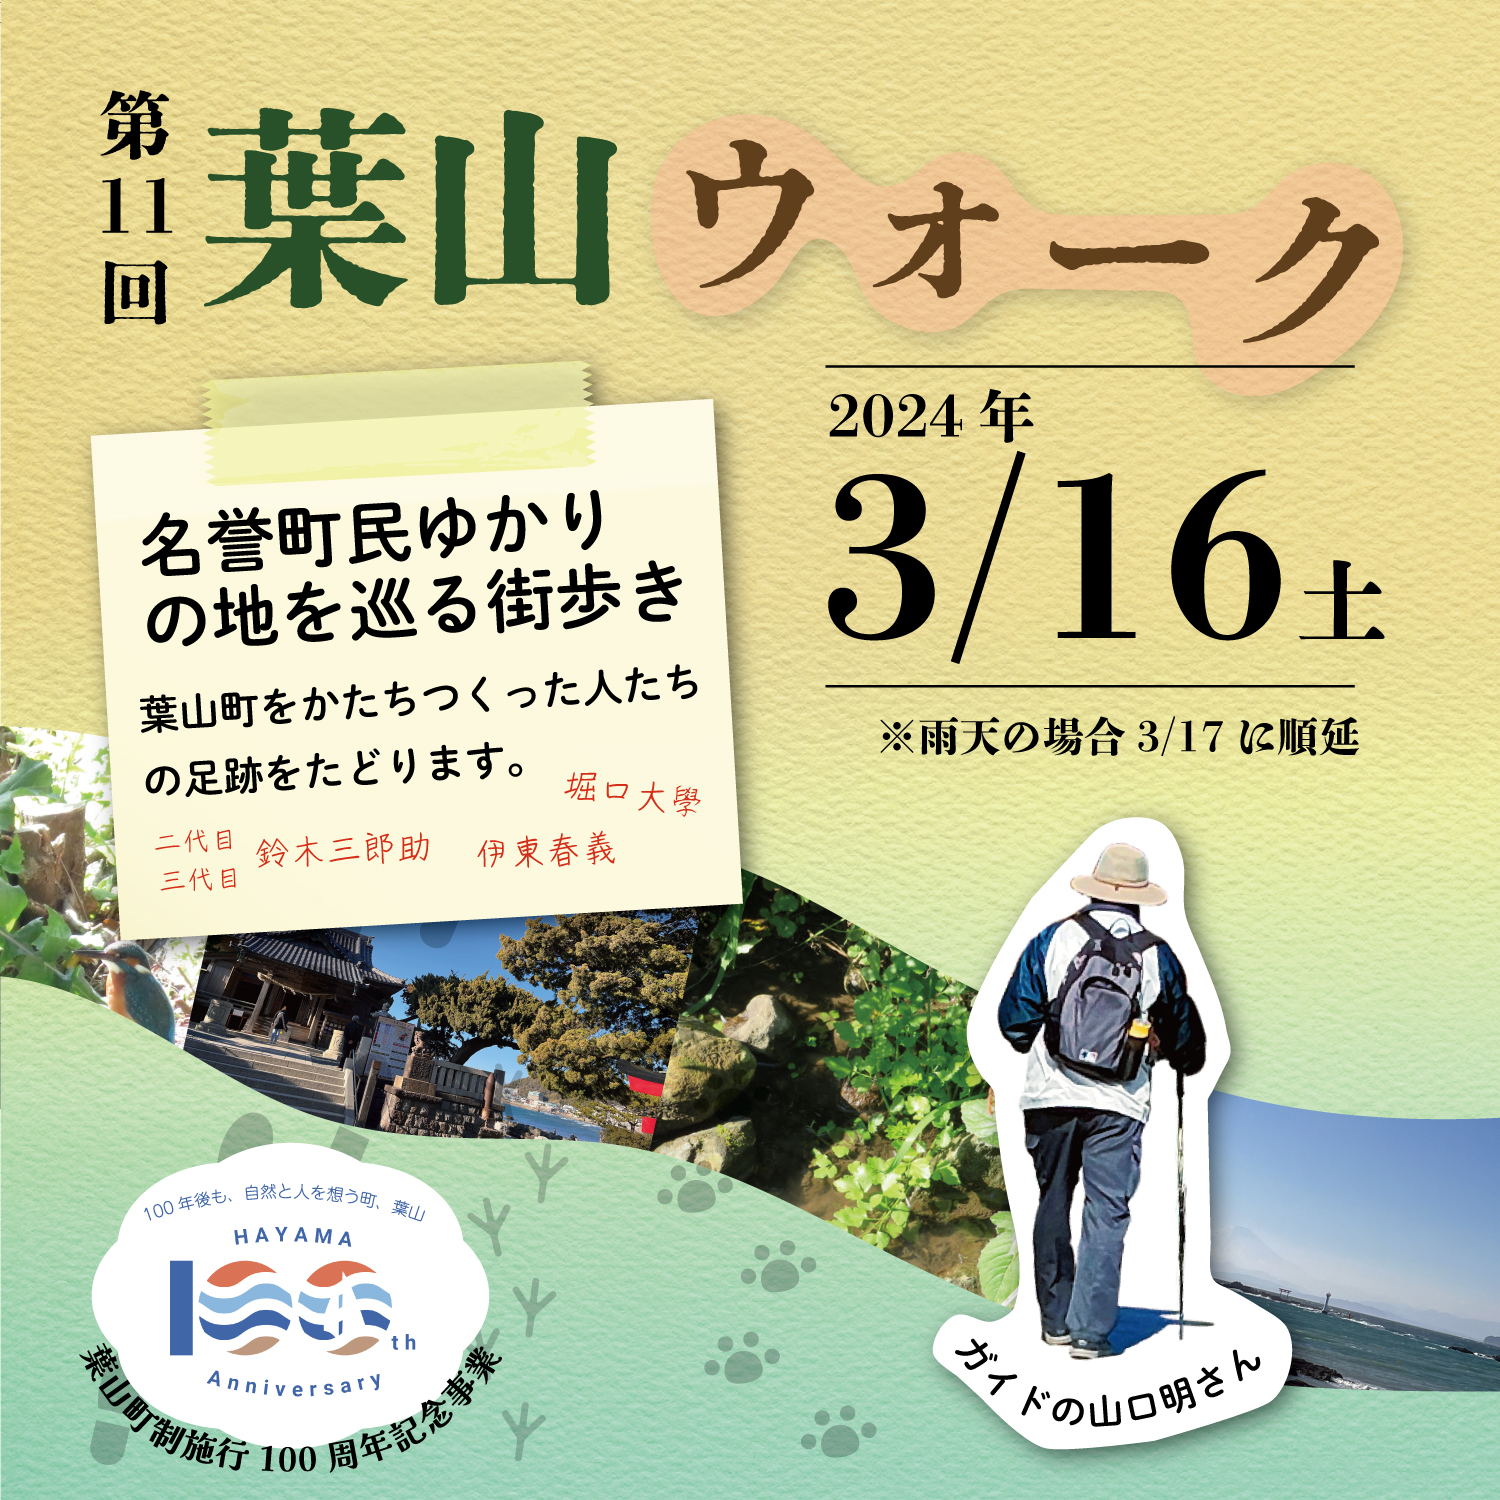 【葉山町】町制施行100周年記念「第11回葉山ウォーク」3月16日開催！